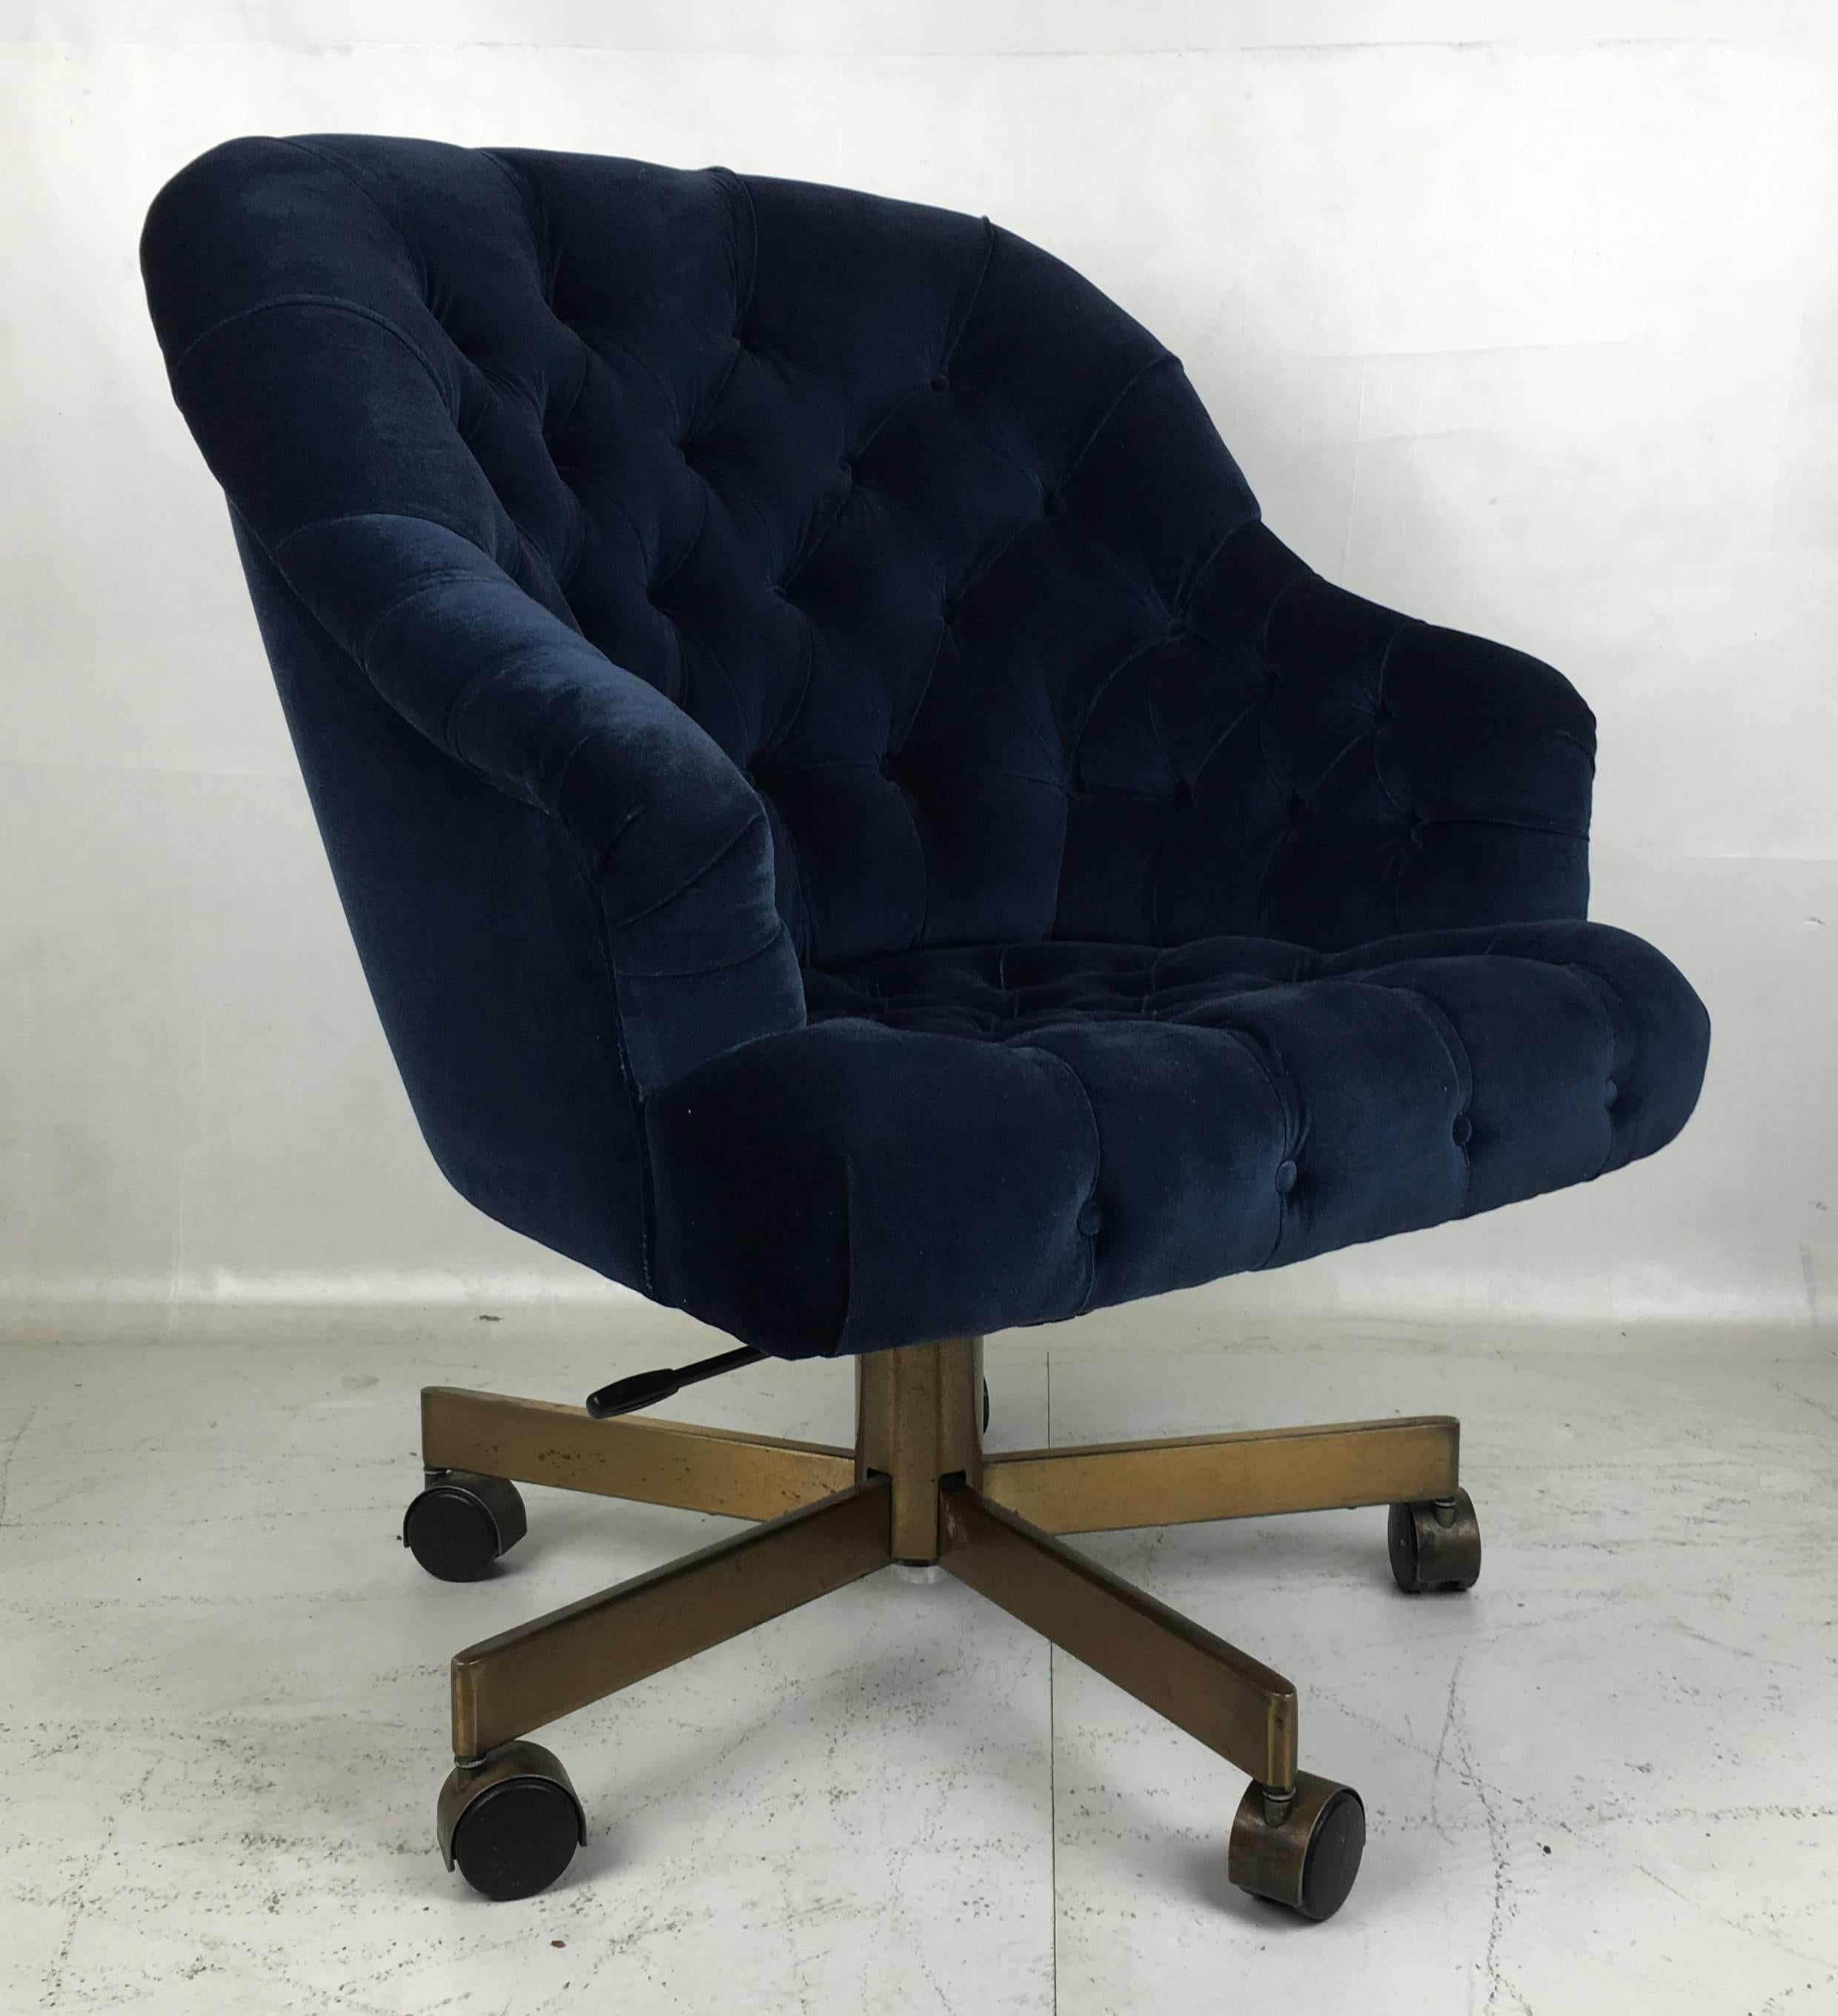 Modern Tufted Velvet Executive Swivel Desk Chair by Edward Wormley for Dunbar